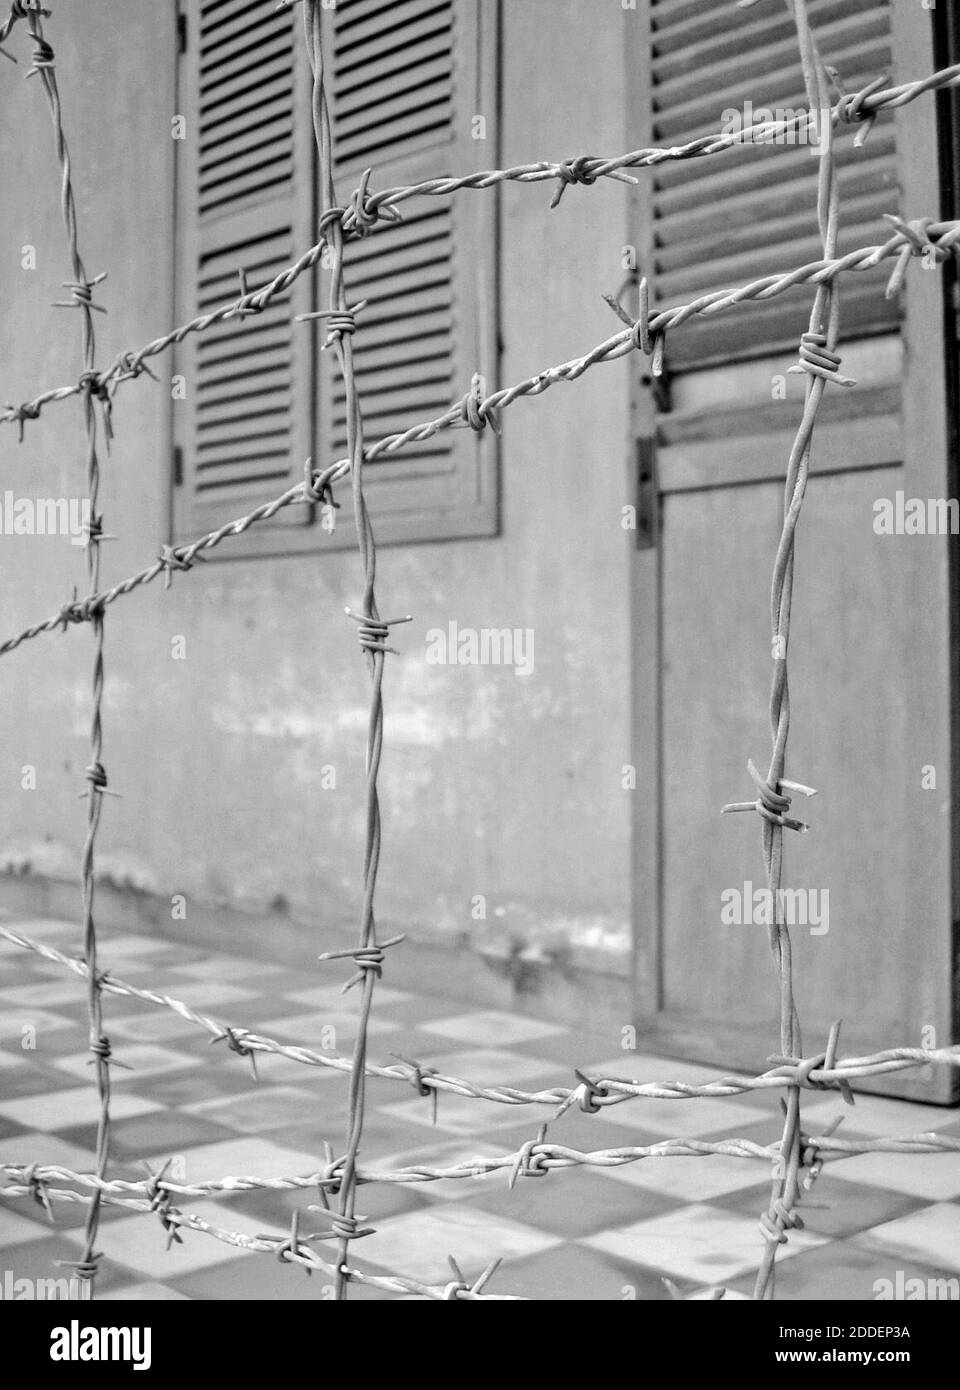 Le barbelé agit comme l'un des obstacles utilisés par les Khmers rouges dans ce qui est maintenant le Musée du génocide de Tuol Sleng à Phnom Penh, au Cambodge. Une fois une école secondaire, Tuol Sway Prie High School, à partir de 1976-1979 il est devenu la prison de sécurité 21 (S-21). Composé de plusieurs bâtiments, le campus est devenu un camp d'internement où environ 20,000 personnes ont été emprisonnées, torturées et décédées. Enfermée dans des barbelés électrifiés, l'ancienne école a été découverte par l'armée vietnamienne conquirante. Sur les plus de 20,000 prisonniers, il y avait 12 survivants connus. L'école est maintenant le Musée du génocide de Tuol Sleng. Banque D'Images